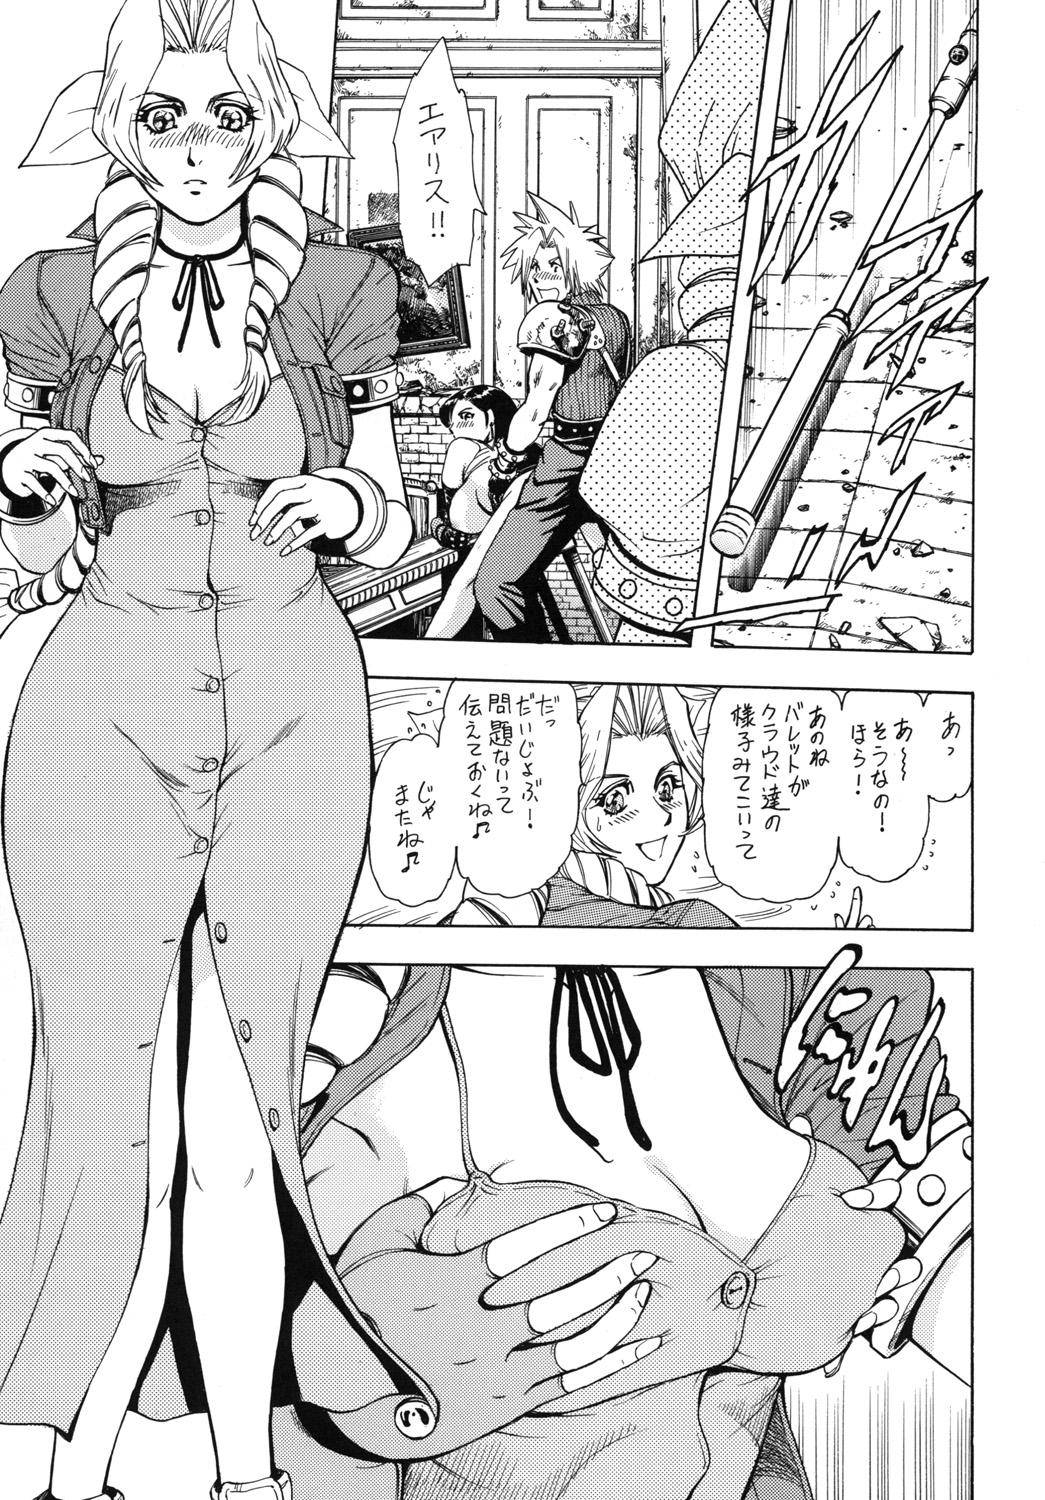 No Condom Tenshi no Kuchibiru Megami no Hanazono - Dead or alive Final fantasy vii Gundam Mobile suit gundam Rumble roses Athletic - Page 12